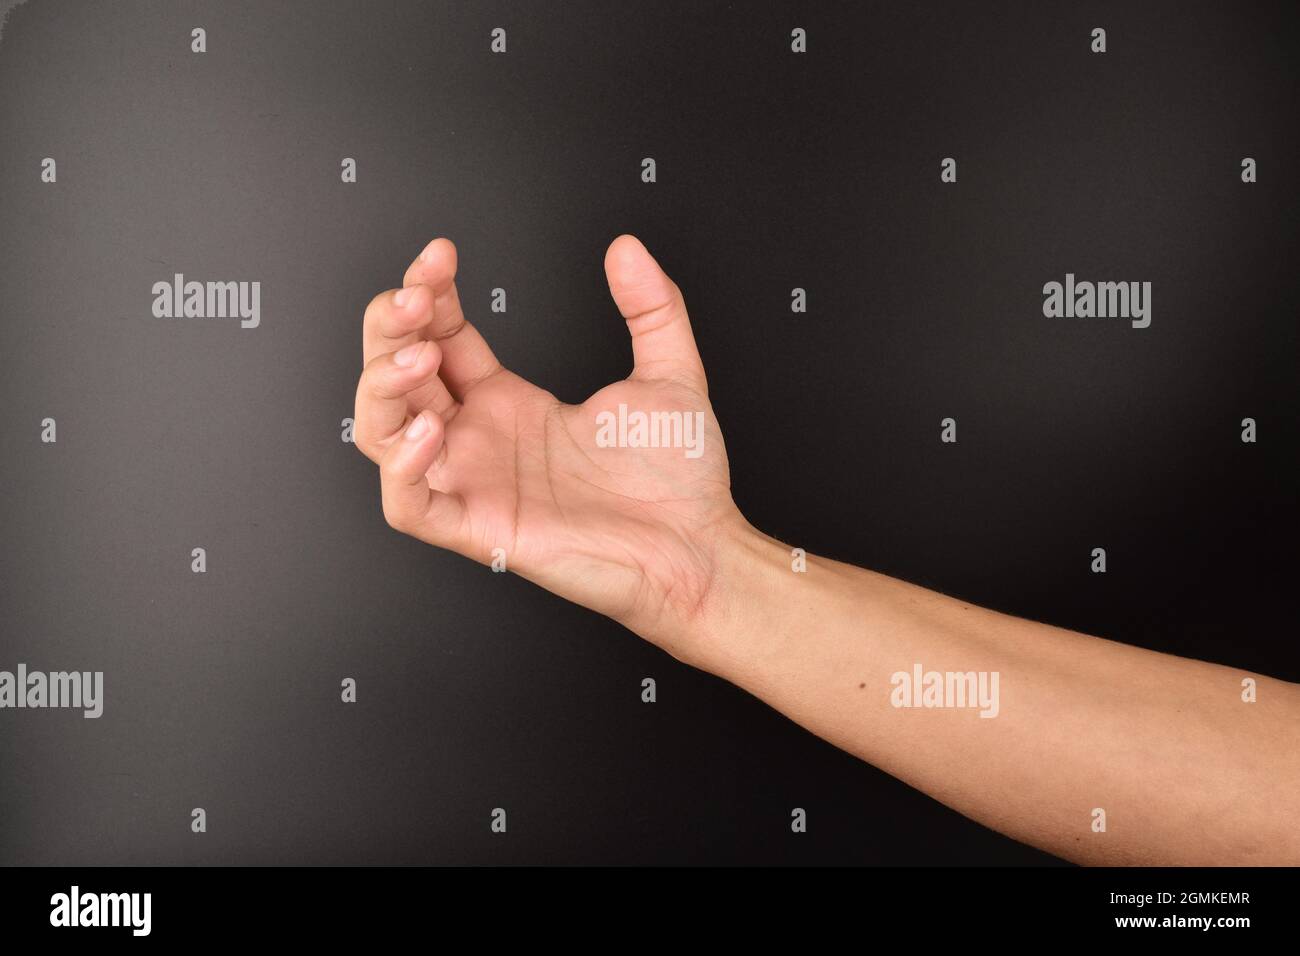 Zornige Handbewegung auf dunklem Hintergrund Stockfoto